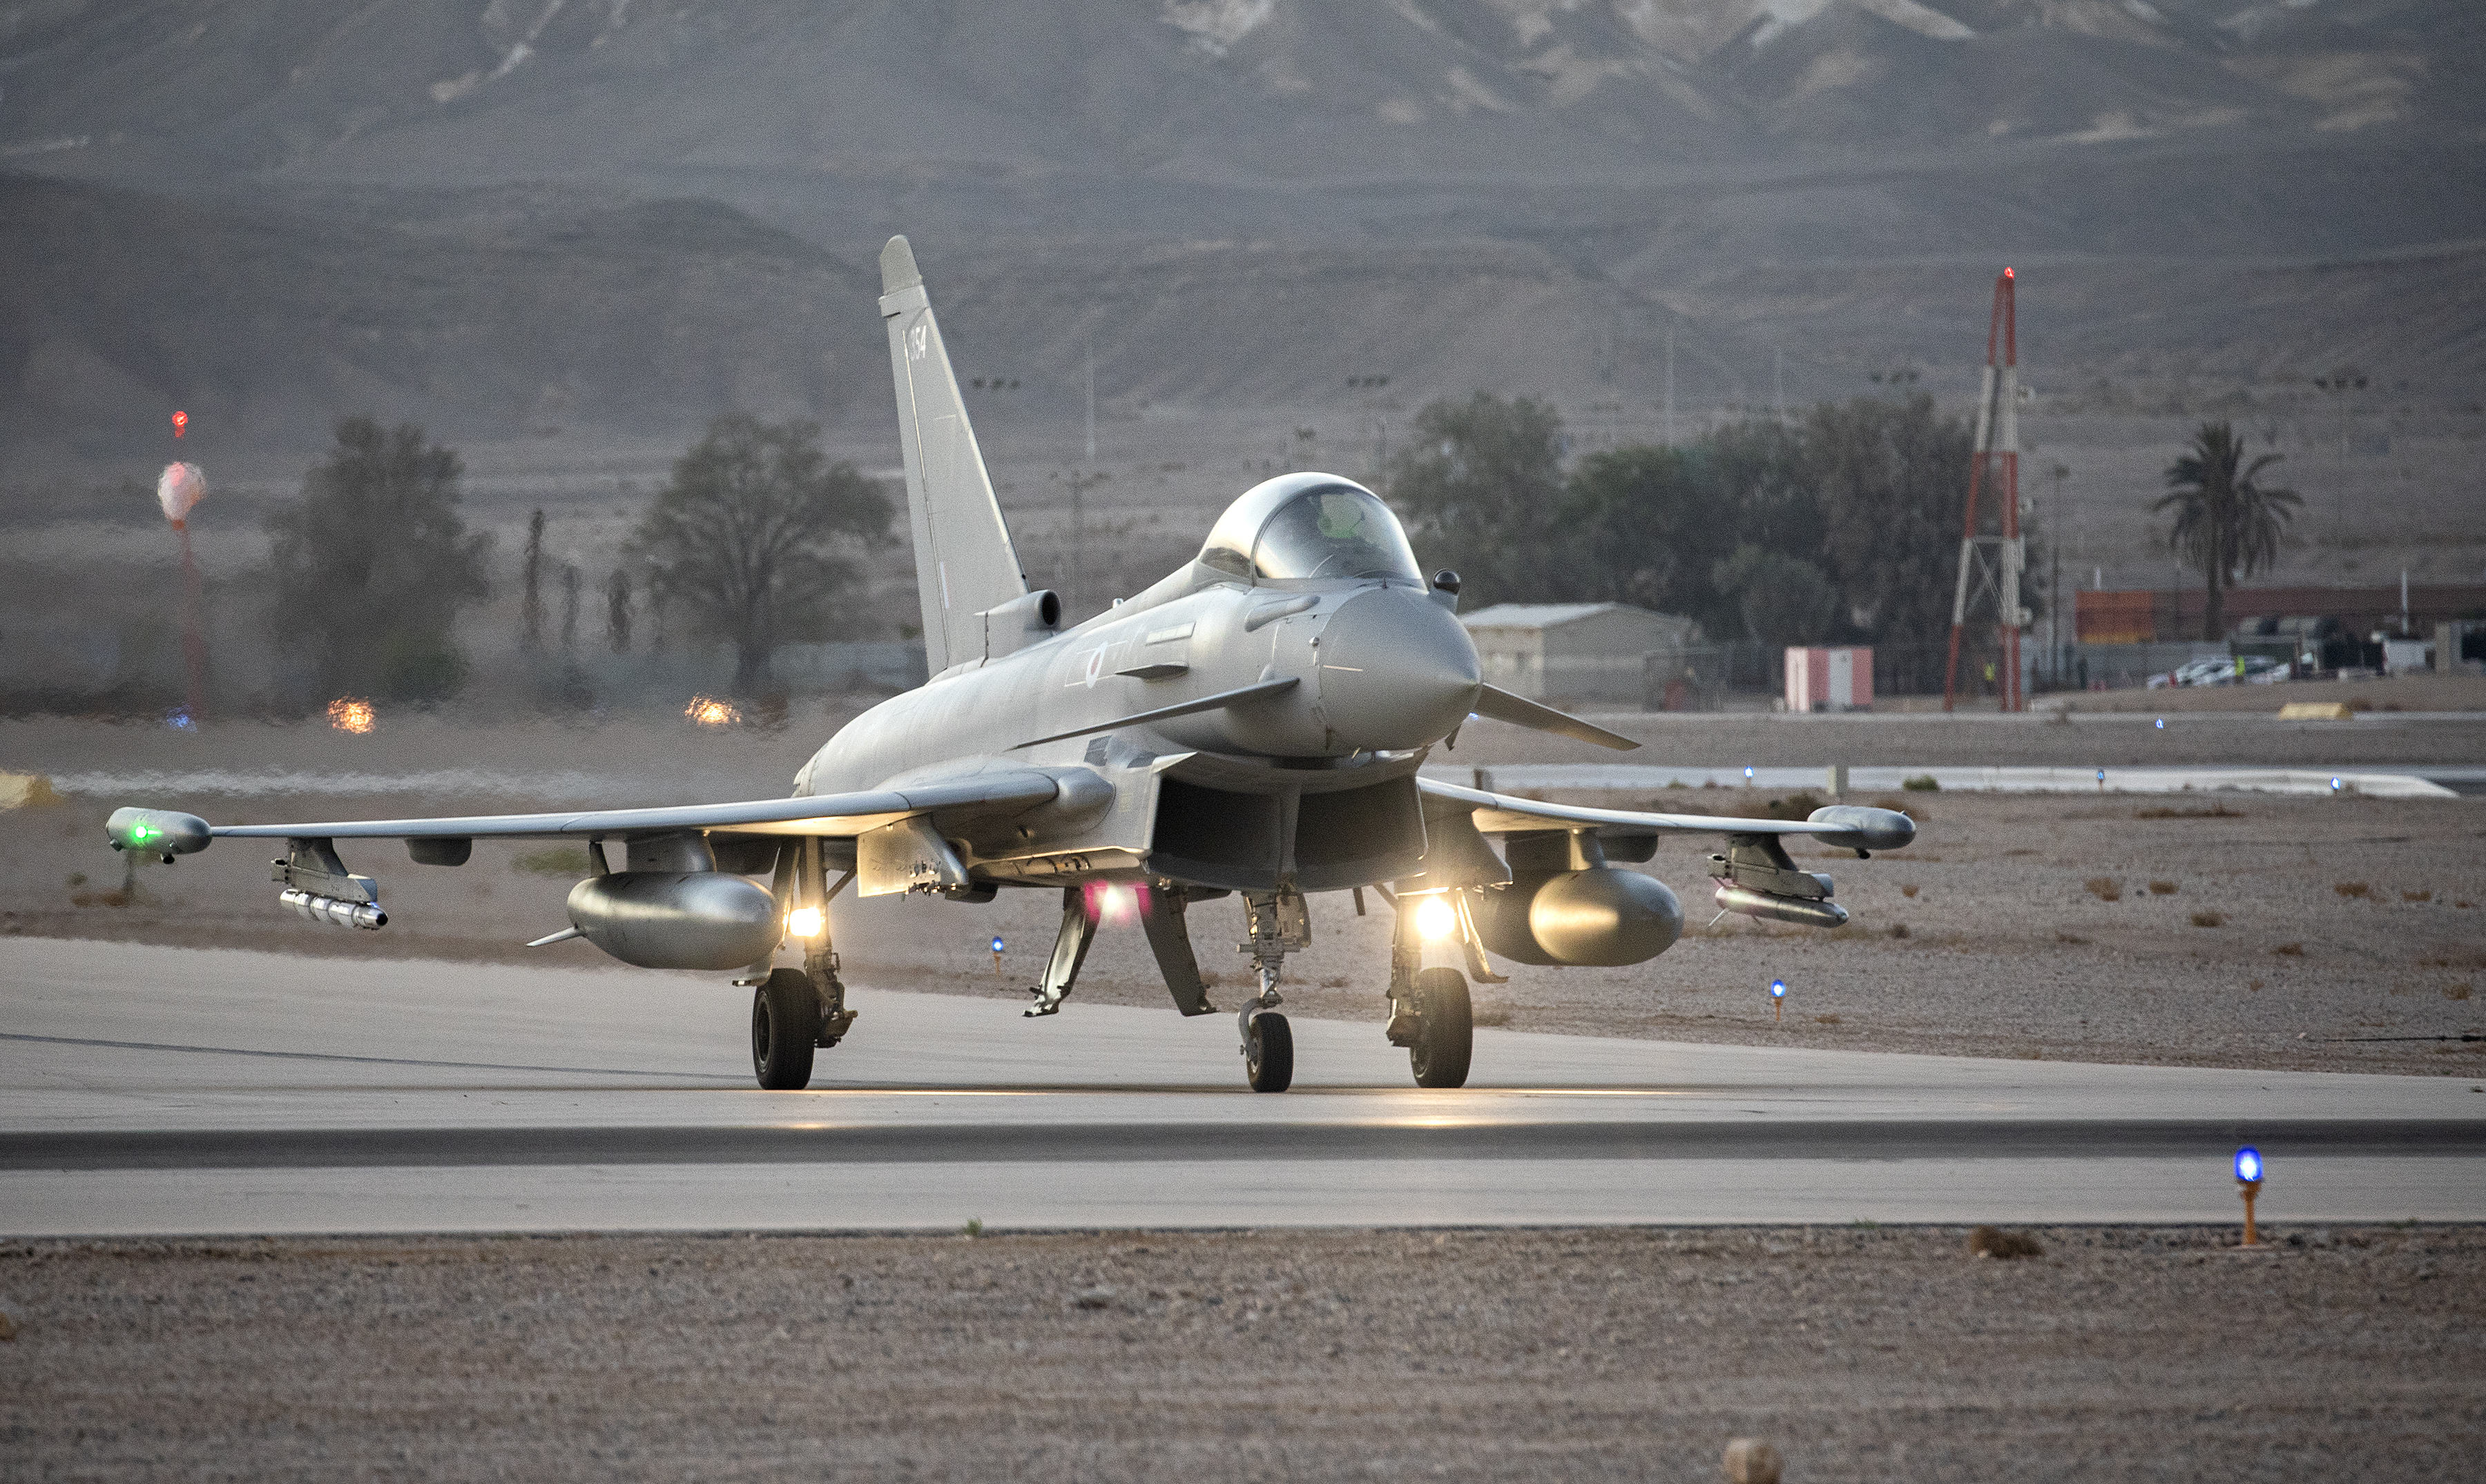 RAF Typhoon on the runway.